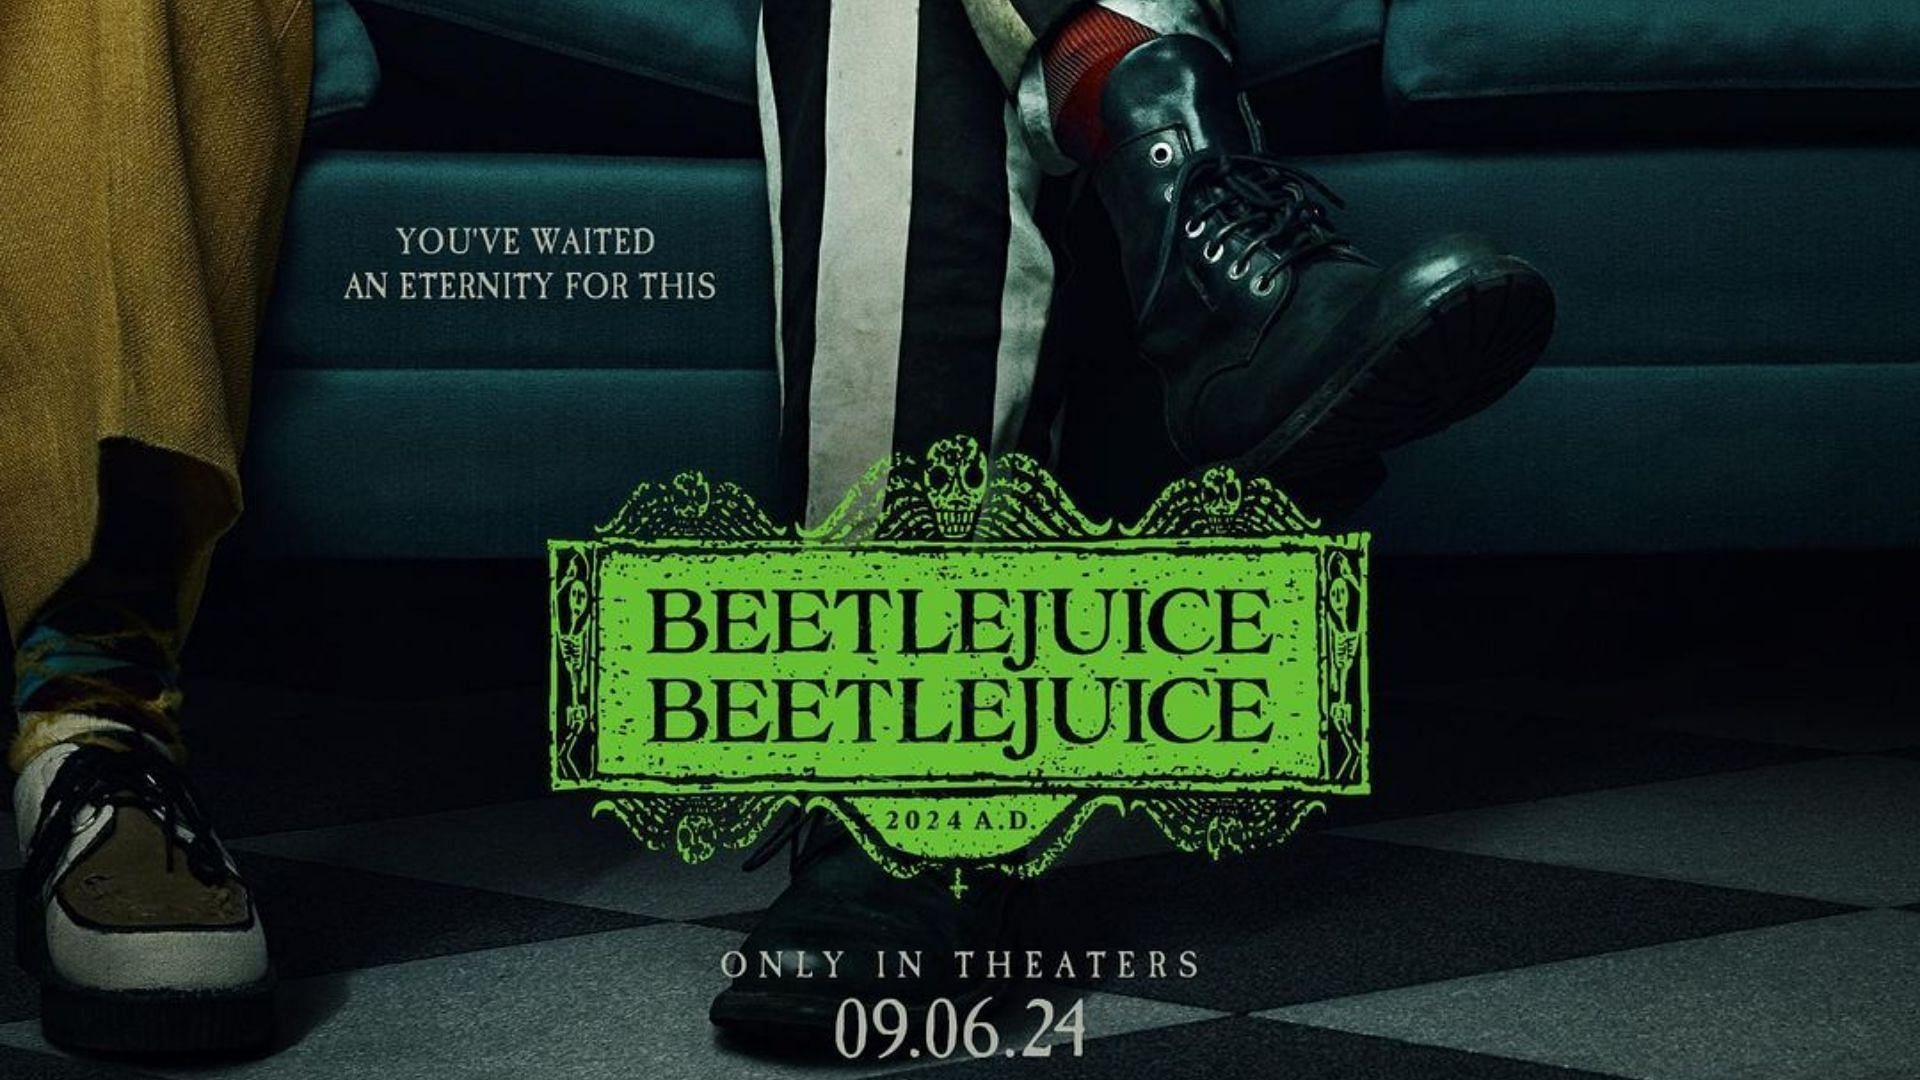 Beetlejuice 2 comes to theaters in September. (Image via Beetlejuice, Instagram)